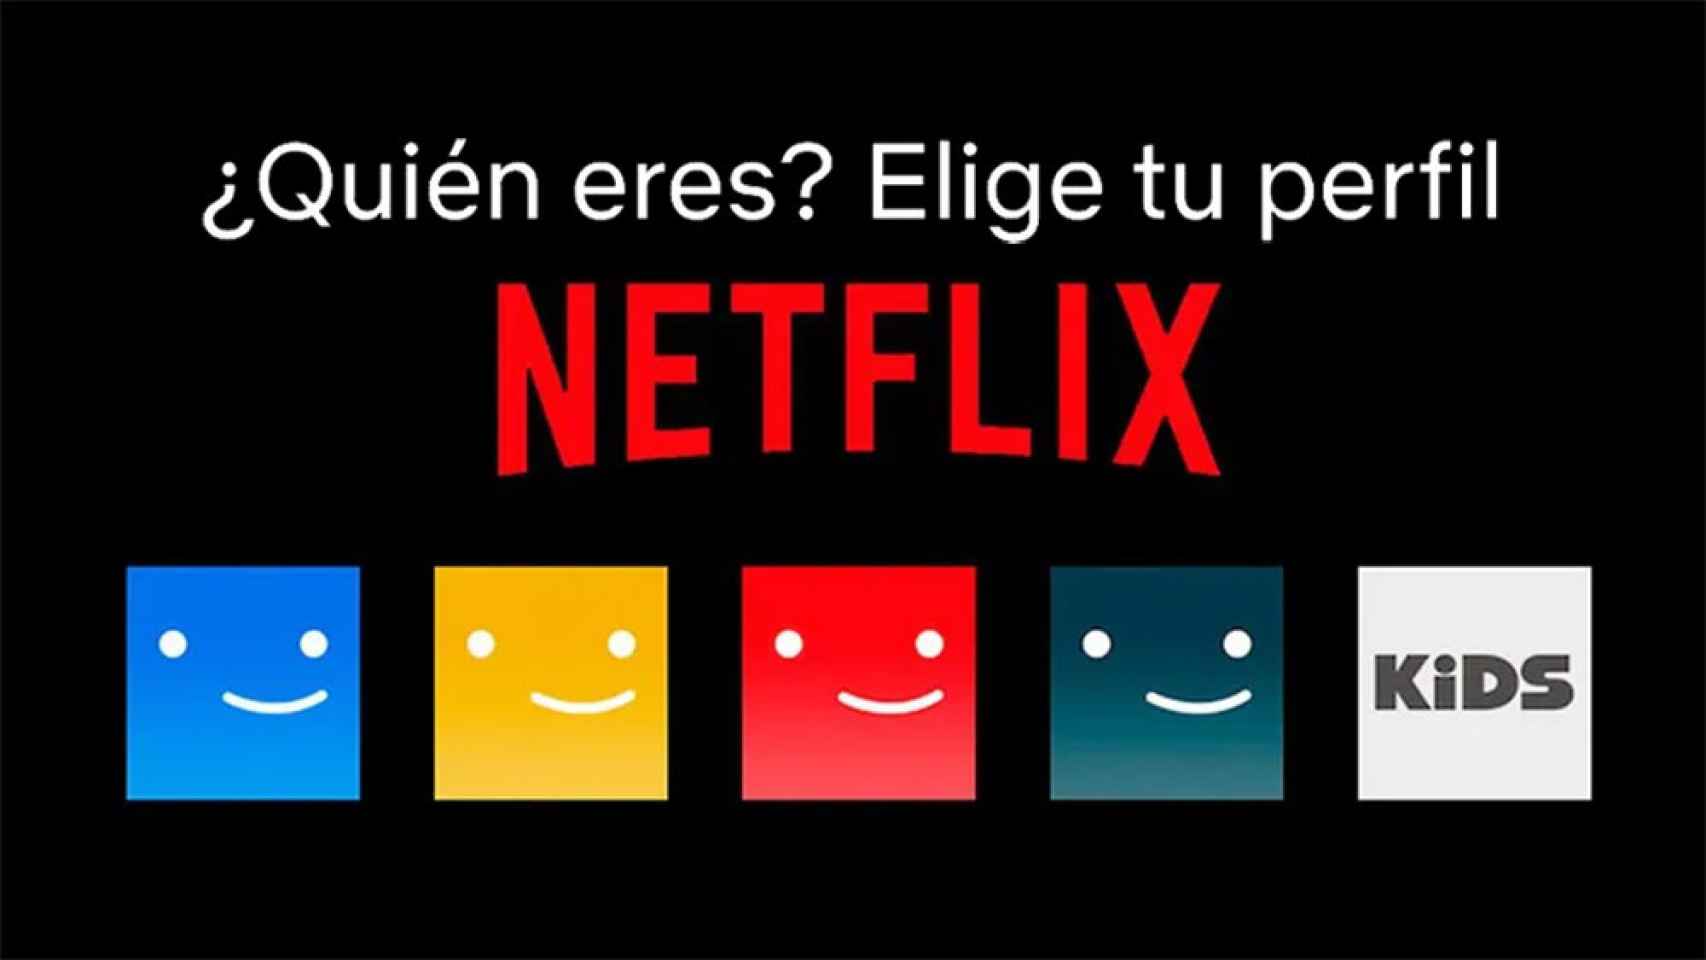 La policía del streaming llegará a primeros de 2023: Netflix explica las nuevas cuentas compartidas